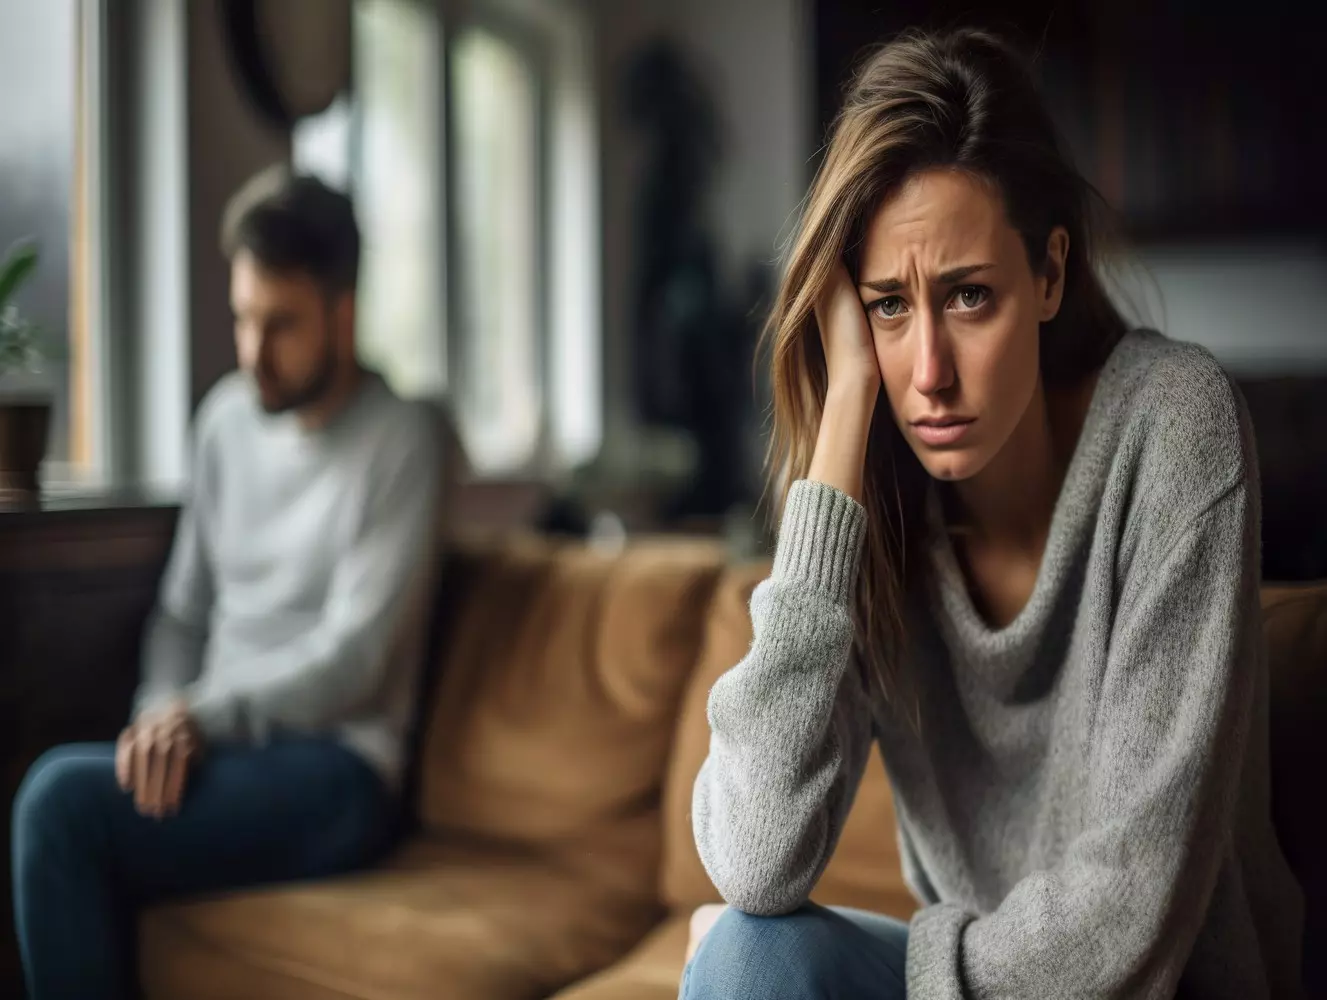 La séparation de fait : une solution pour se séparer sans divorcer, mais qui présente des risques